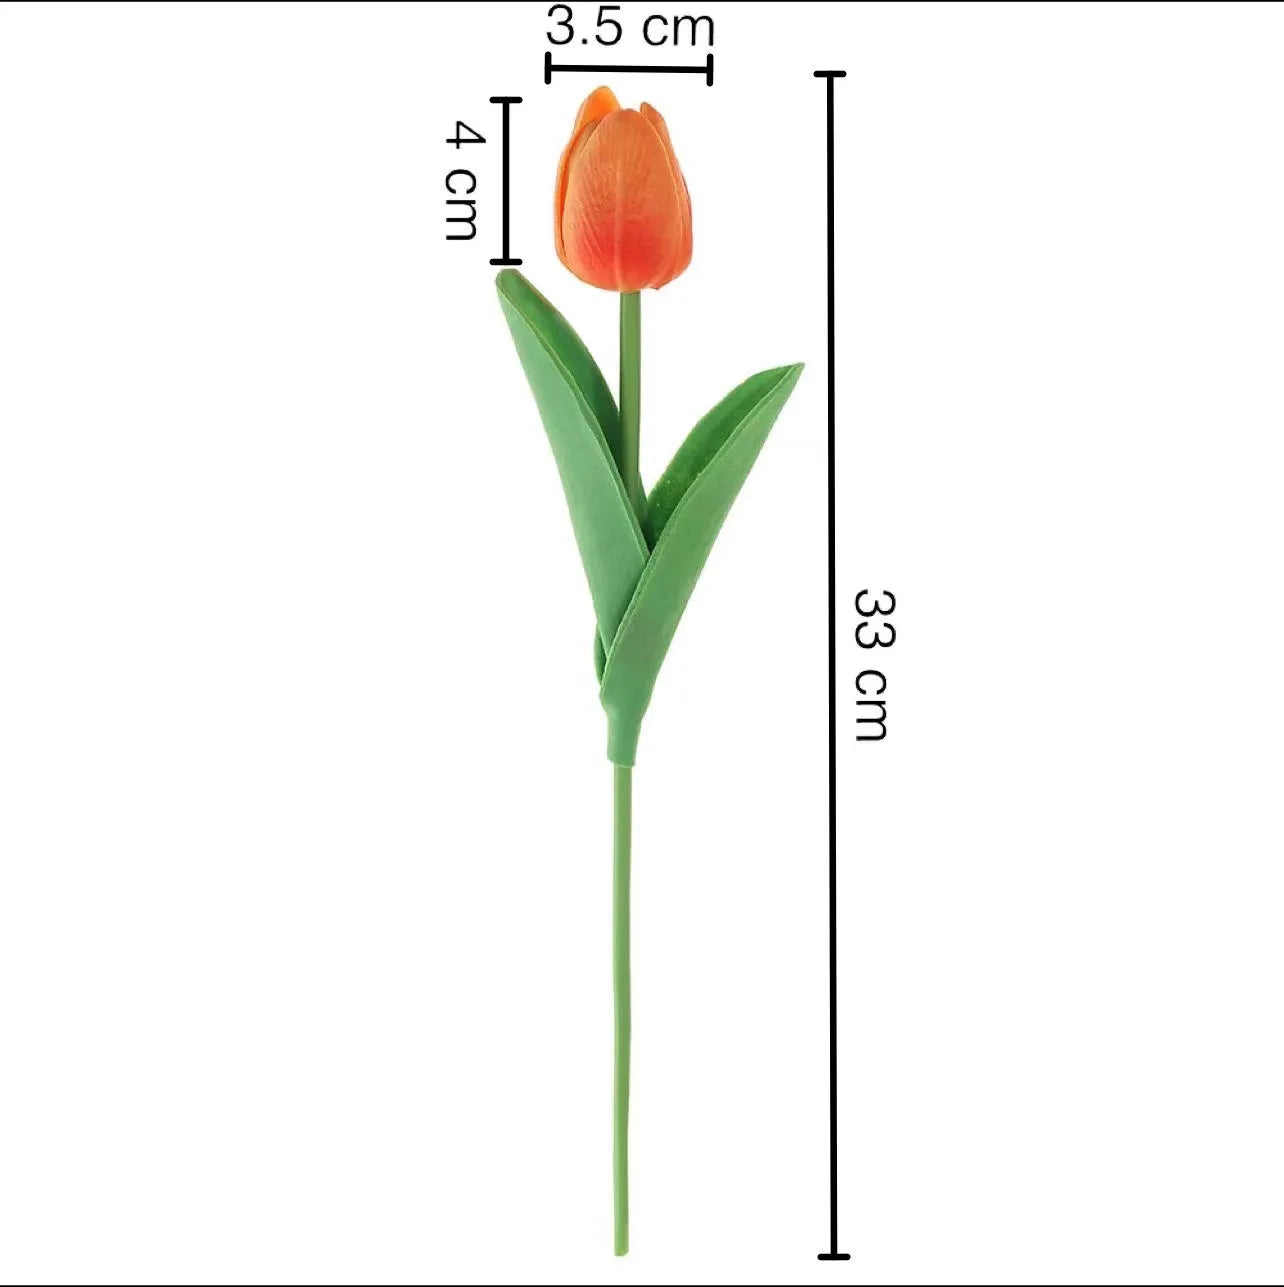 Artificial Tulips Bouquet 3/5pcs